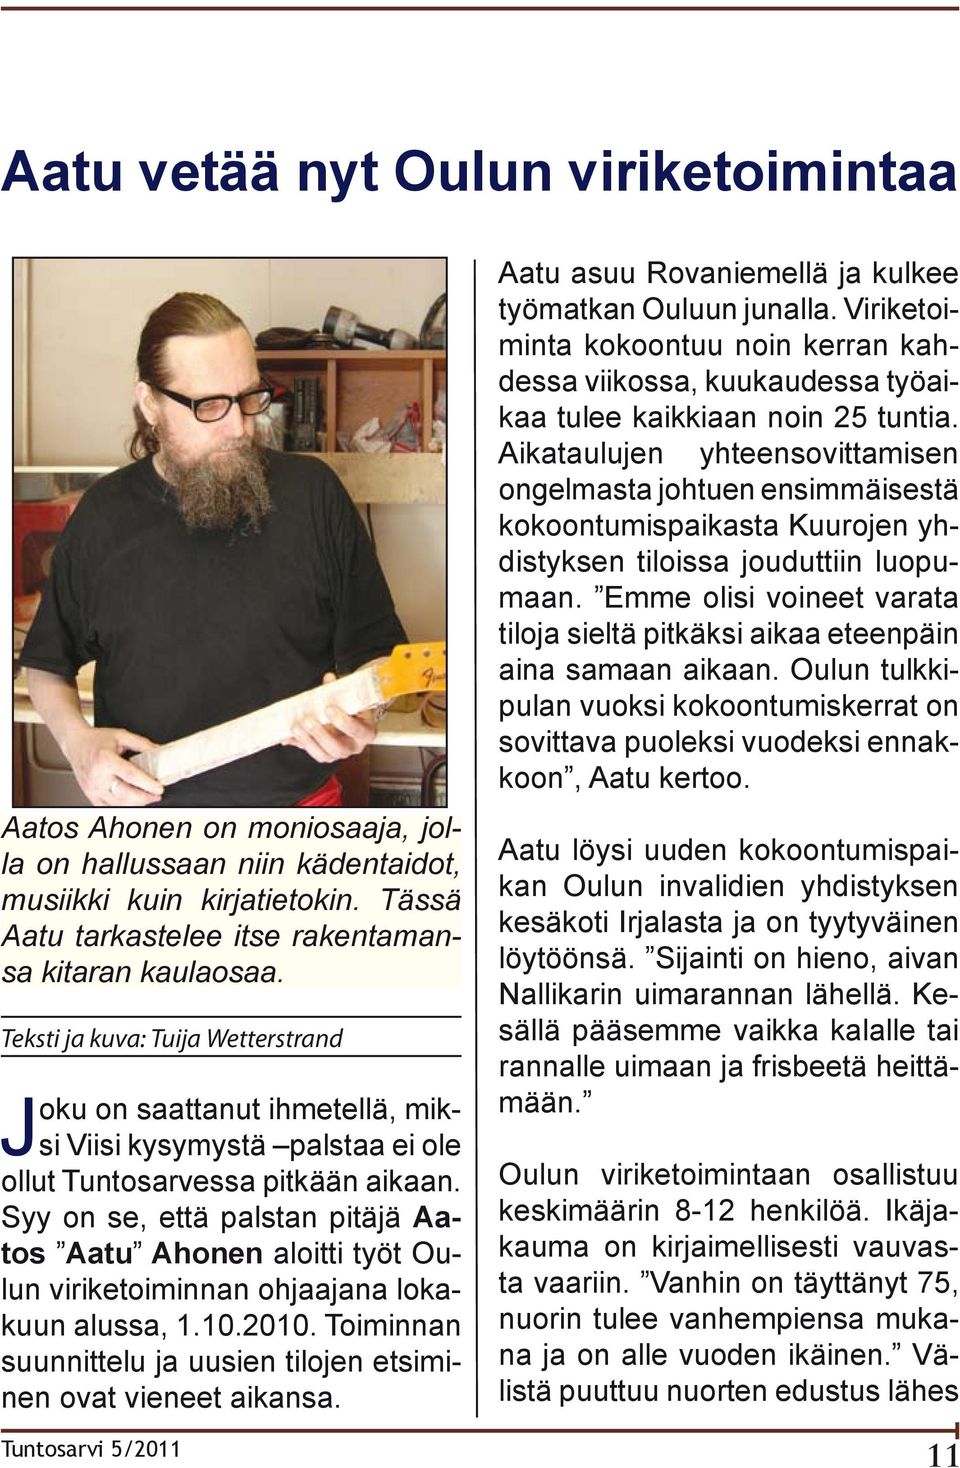 Syy on se, että palstan pitäjä Aatos Aatu Ahonen aloitti työt Oulun viriketoiminnan ohjaajana lokakuun alussa, 1.10.2010. Toiminnan suunnittelu ja uusien tilojen etsiminen ovat vieneet aikansa.